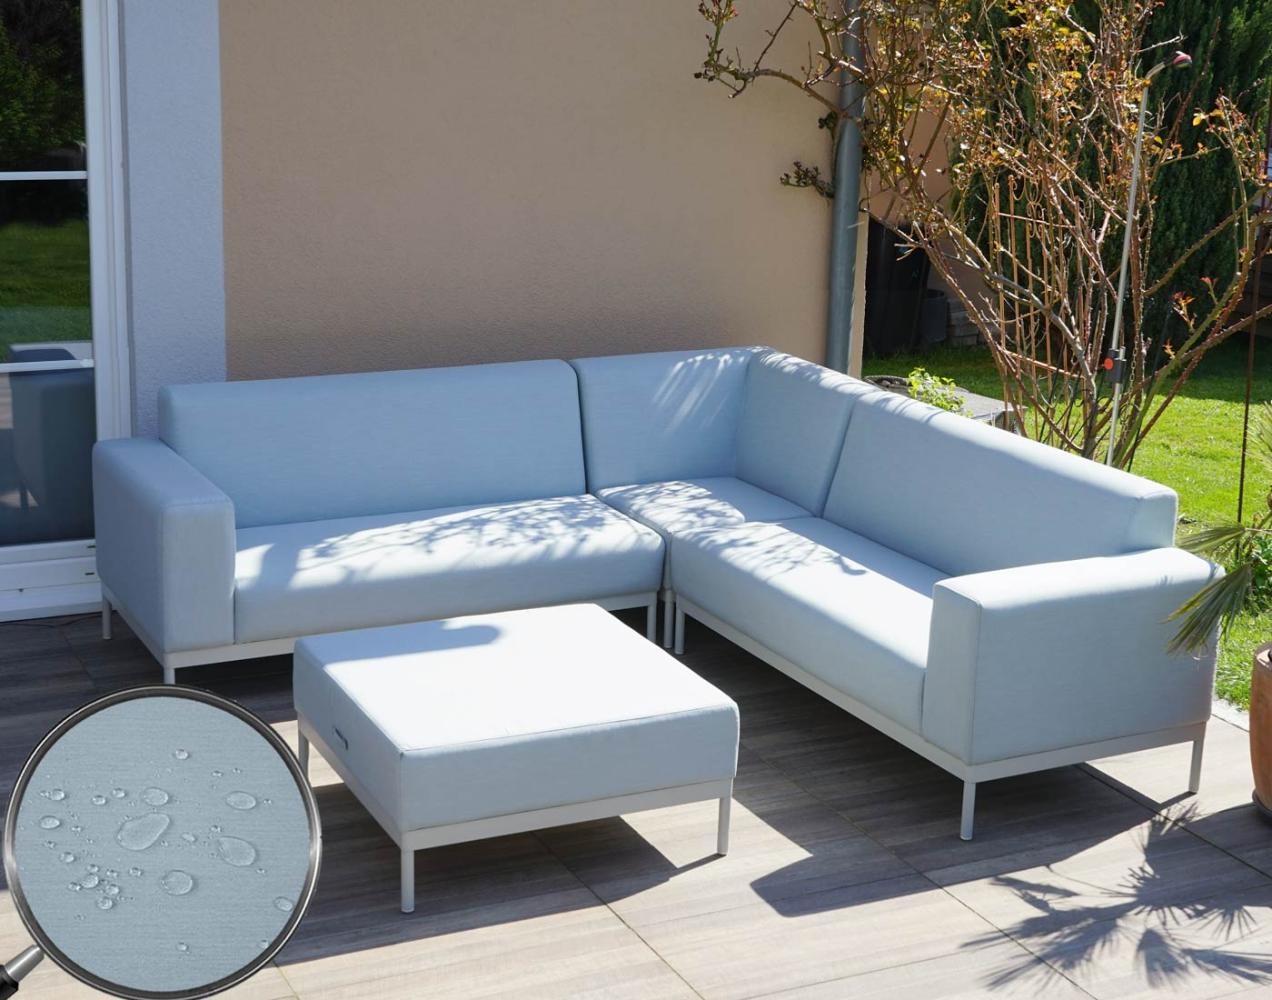 Alu-Garten-Garnitur HWC-C47, Sofa, Outdoor Stoff/Textil ~ blau ohne Ablage, ohne Kissen Bild 1